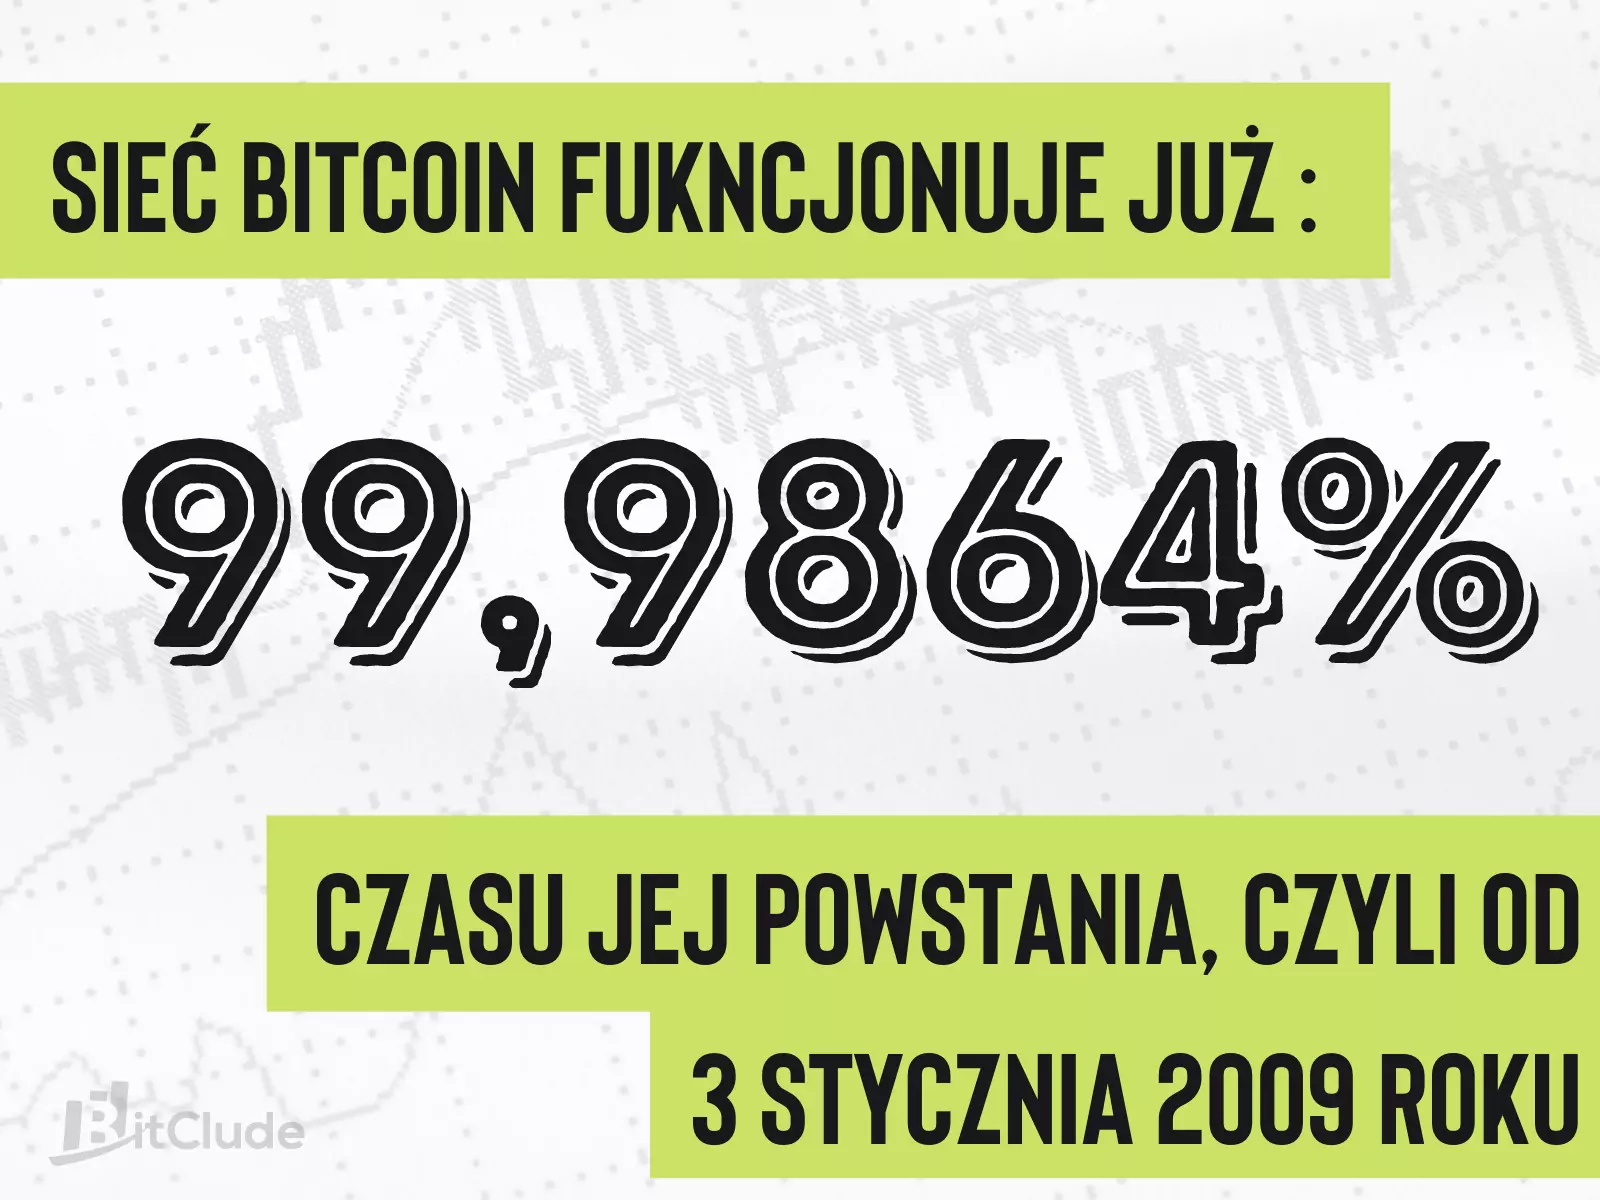 Sieć Bitcoin funkcjonuje już 99.9864% jej powstania, czyli od 3 stycznia 2009 roku.